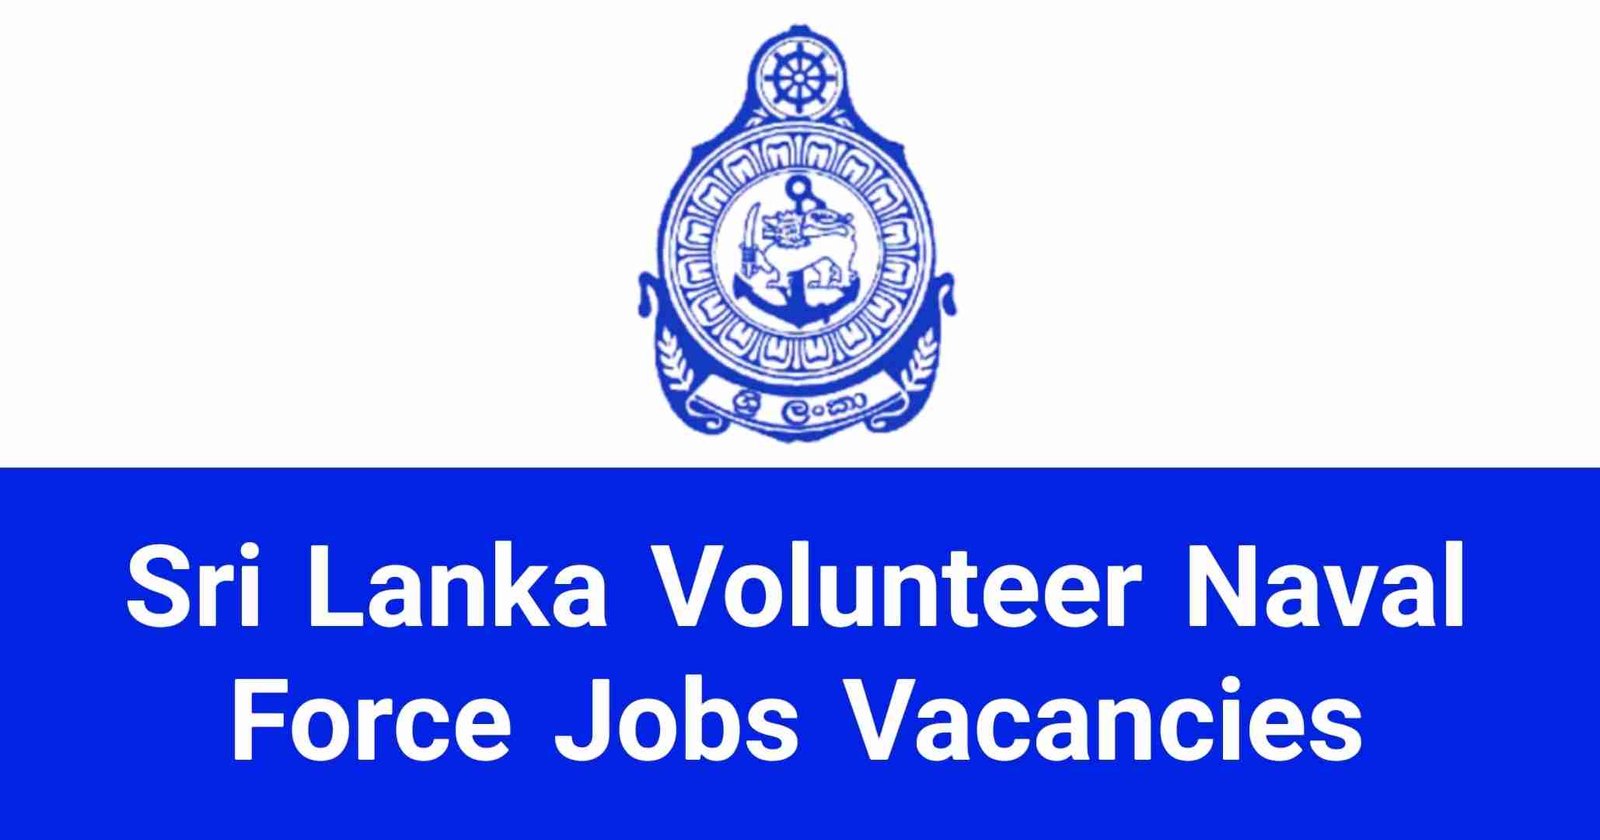 Sri Lanka Volunteer Naval Force Jobs Vacancies